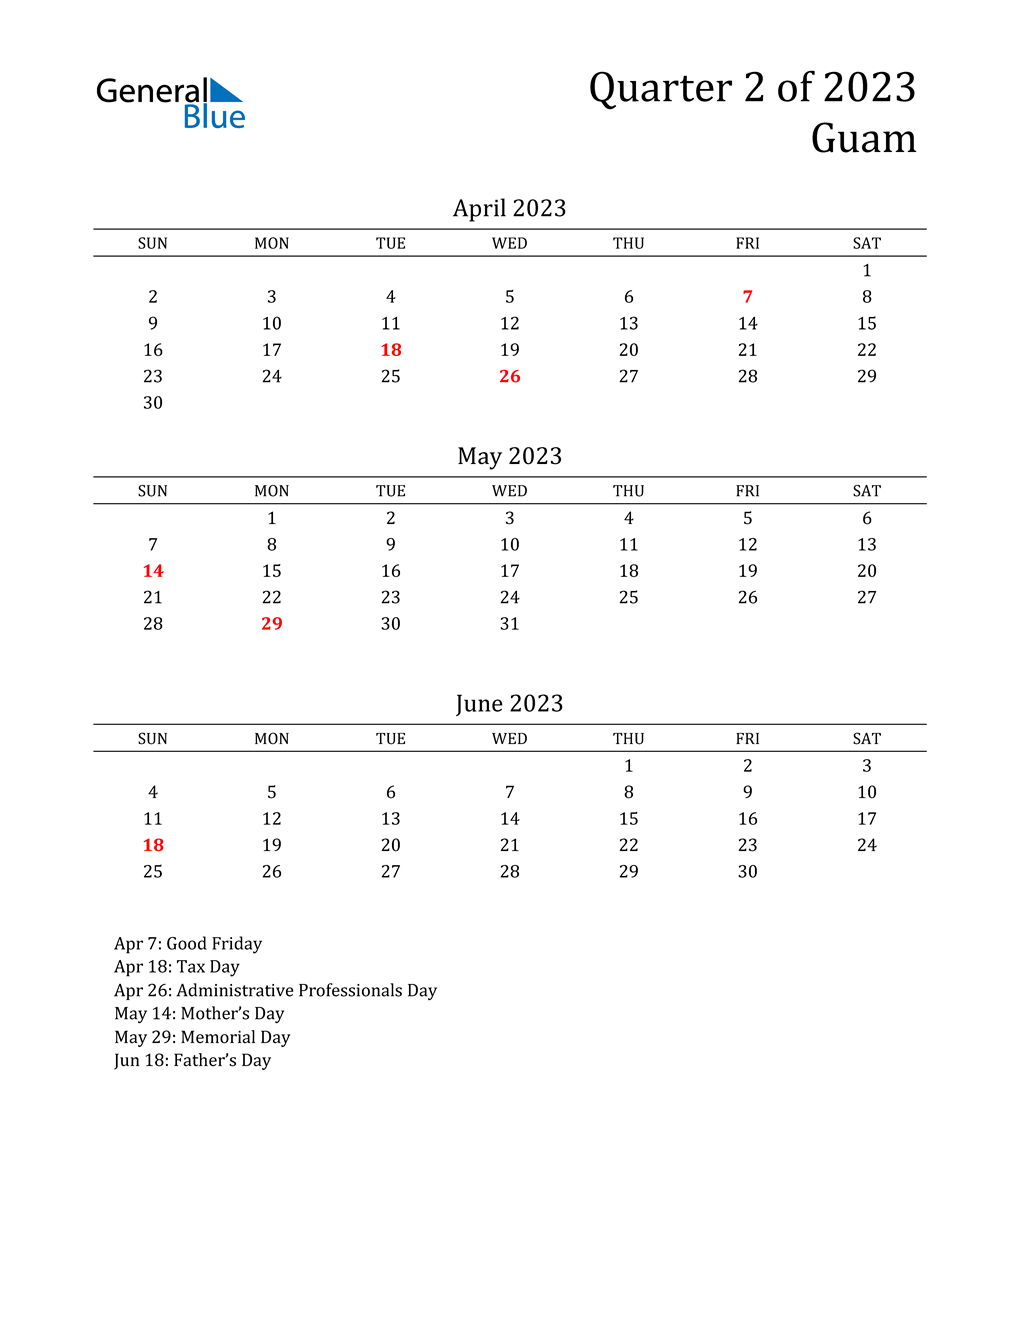  2023 Guam Quarterly Calendar